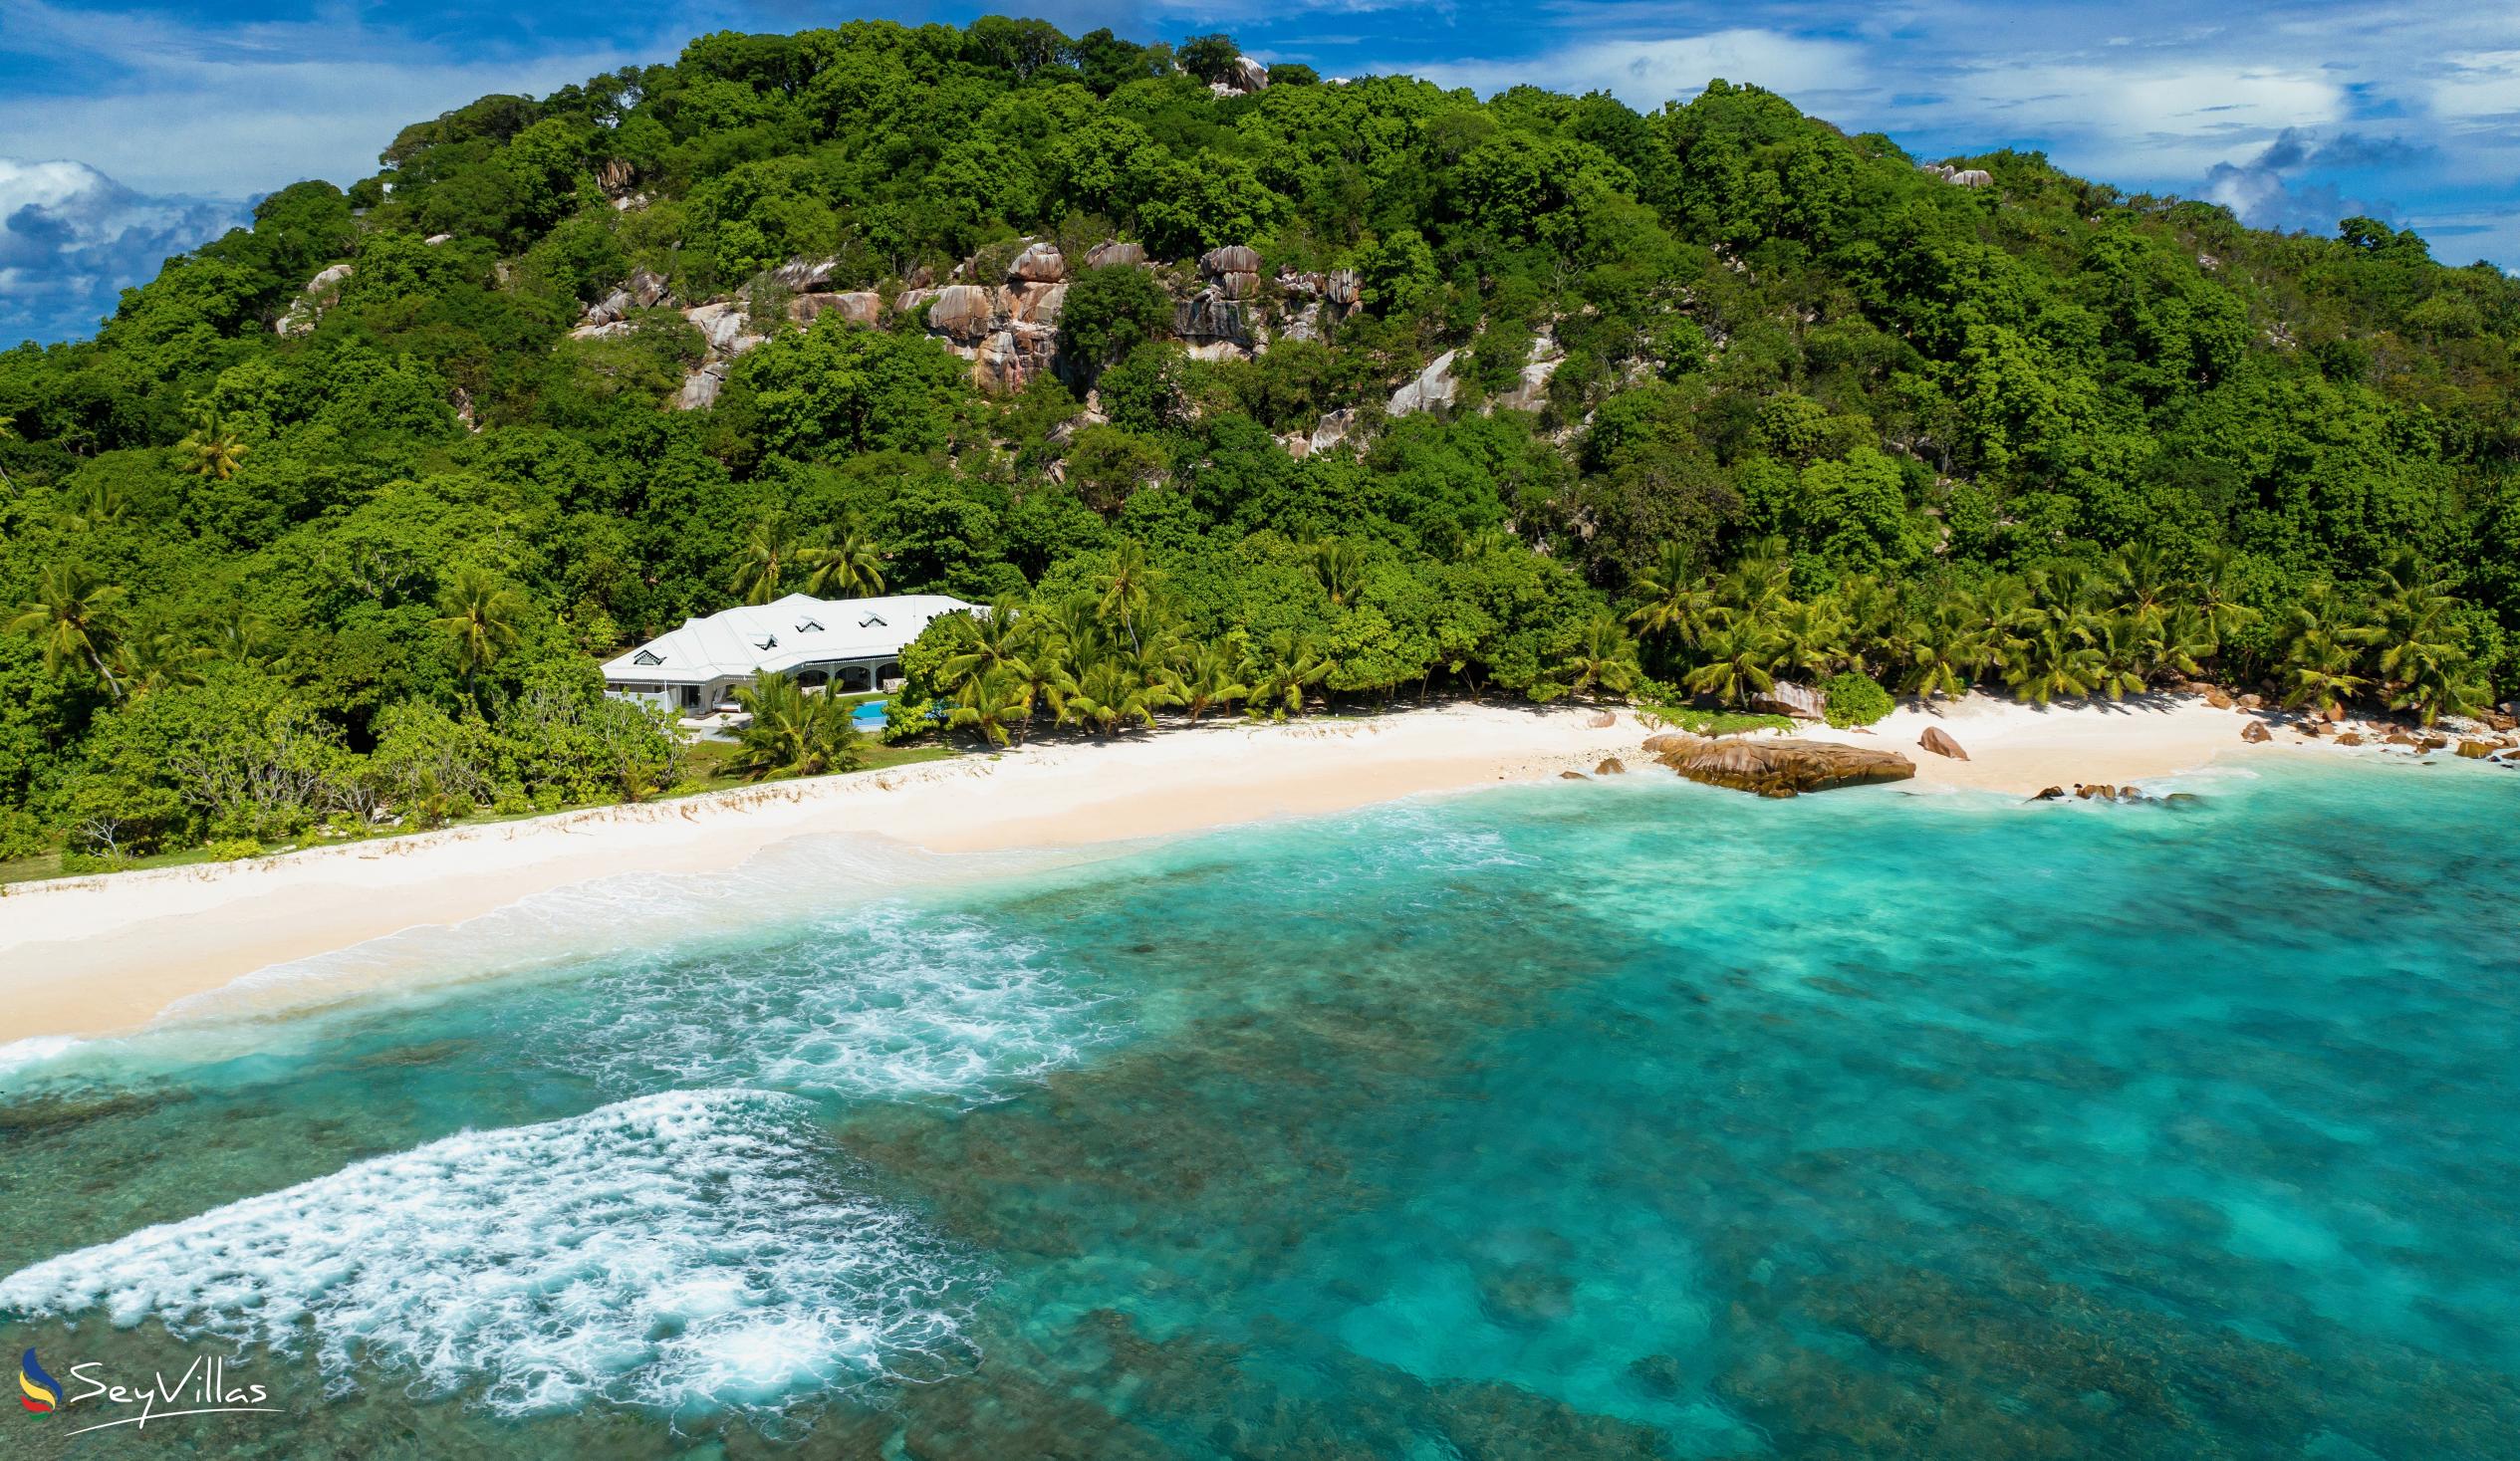 Foto 13: Cousine Island Seychelles - Aussenbereich - Cousine Island (Seychellen)